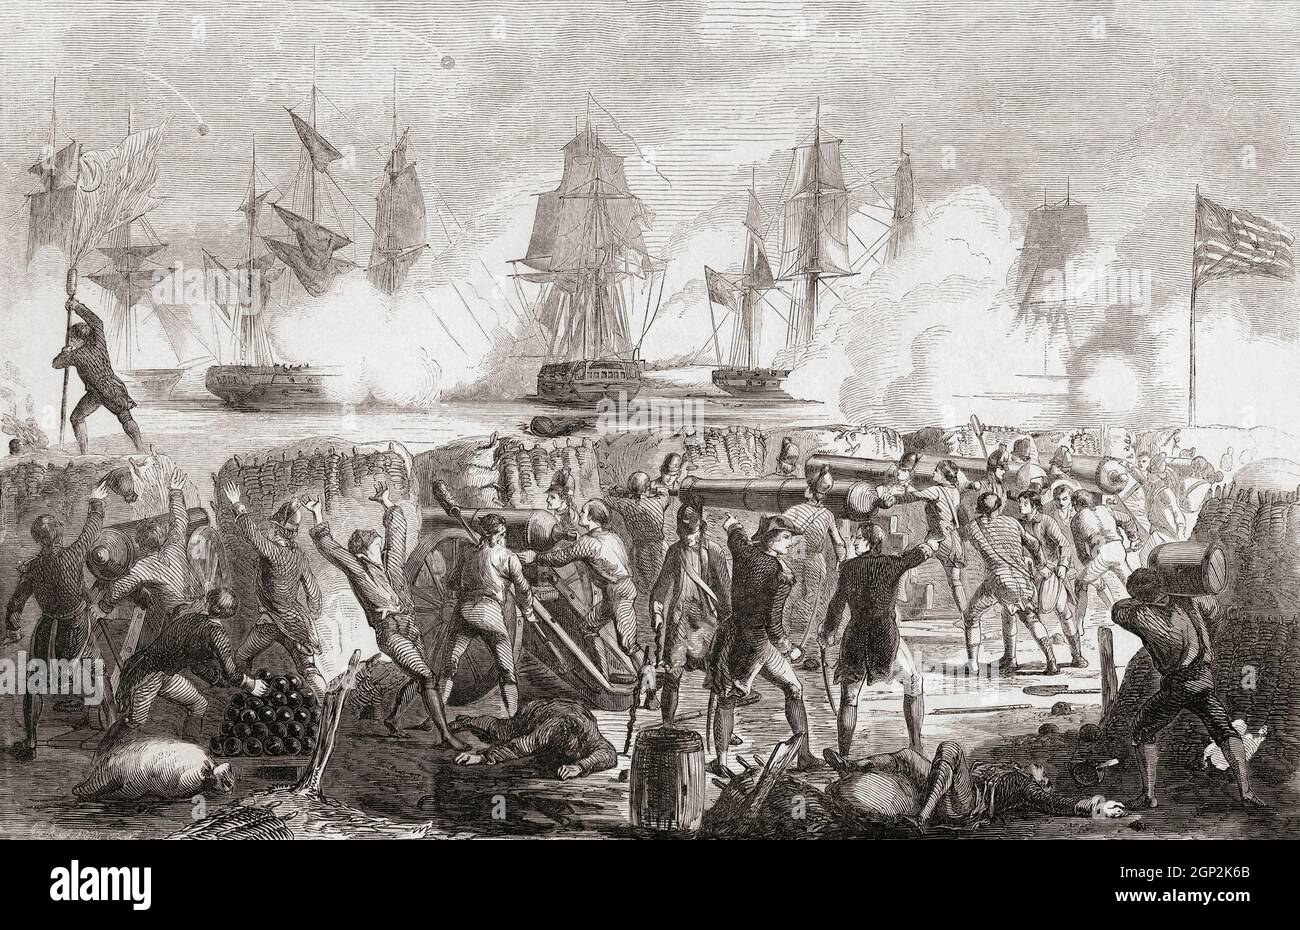 L'attaque contre fort Moltrie, l'île de Sullivan, en Caroline du Sud, sur 28 juin 1776 pendant la révolution américaine. Le fort, alors appelé fort Sullivan, a été construit pour défendre Charleston, en Caroline du Sud, mais n'a été que partiellement achevé quand neuf navires de guerre britanniques ont attaqué. Cependant, le fort a résisté à leur bombardement et ils ont été forcés de se retirer sous un feu défensif lourd. Le commandant du fort pendant la bataille était William Moltyre et le fort a ensuite été renommé en son honneur. Banque D'Images